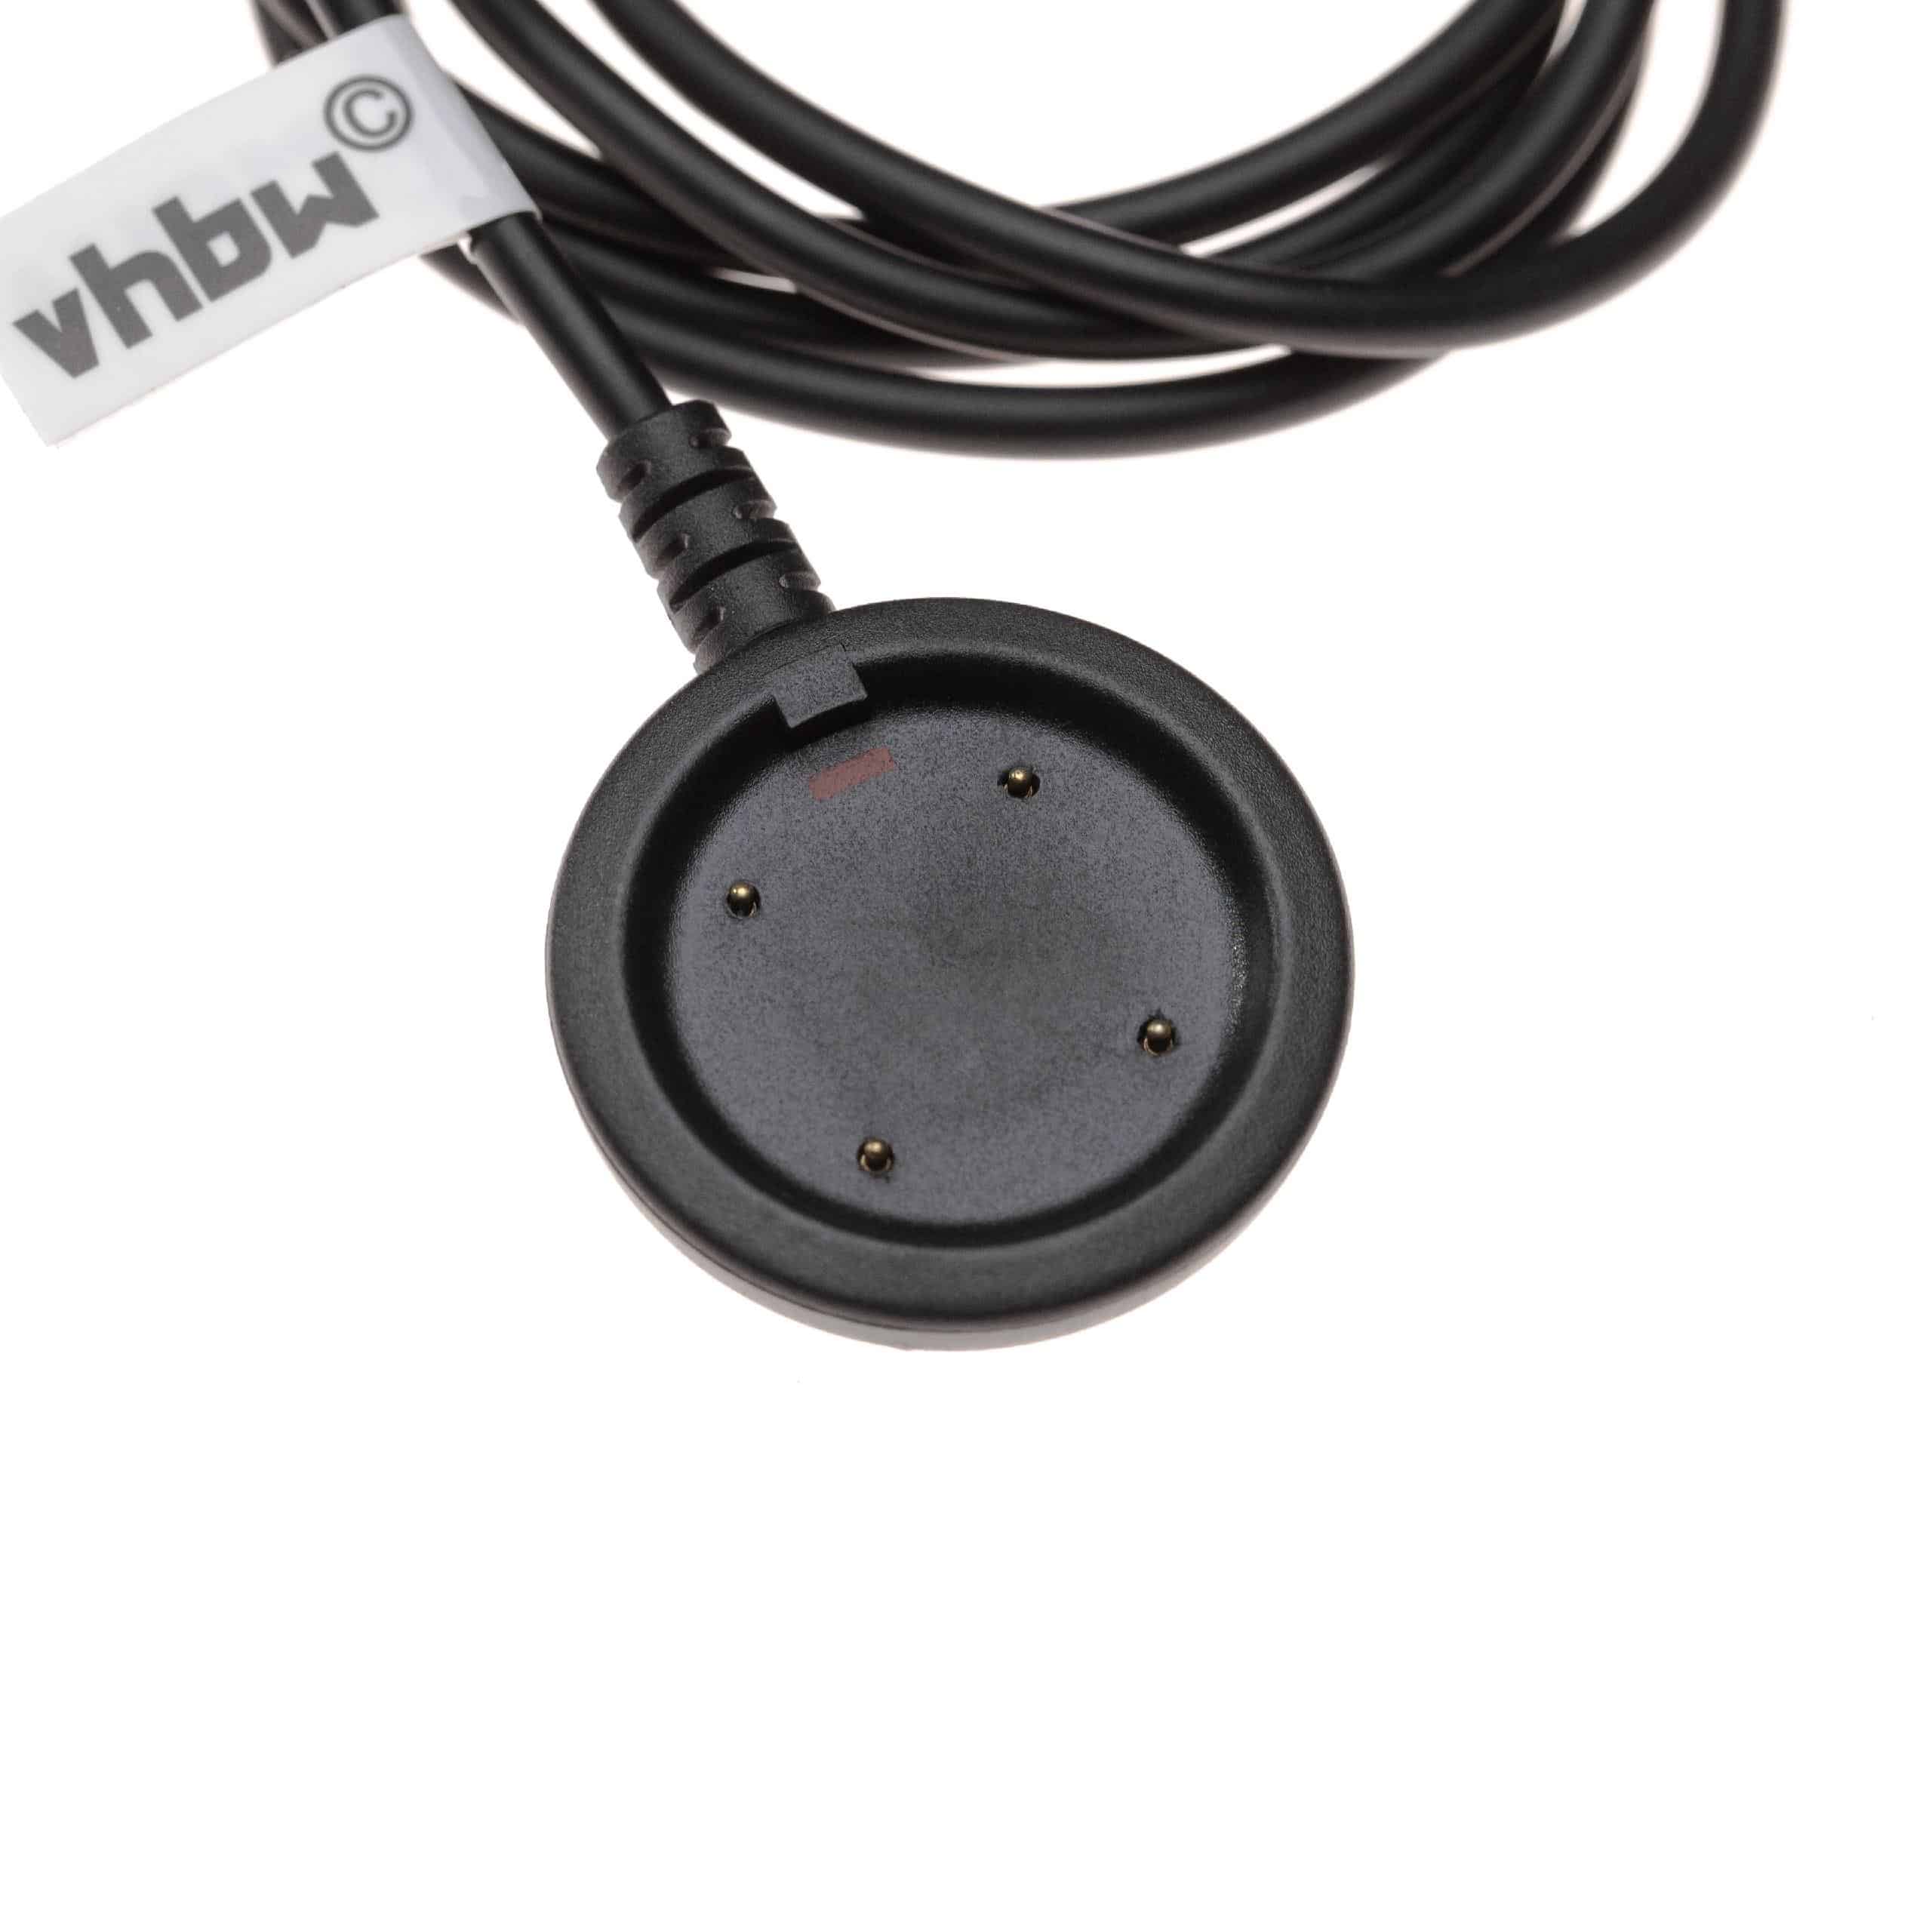 Ladekabel passend für Polar Vantage - 97 cm Kabel, USB-Stecker